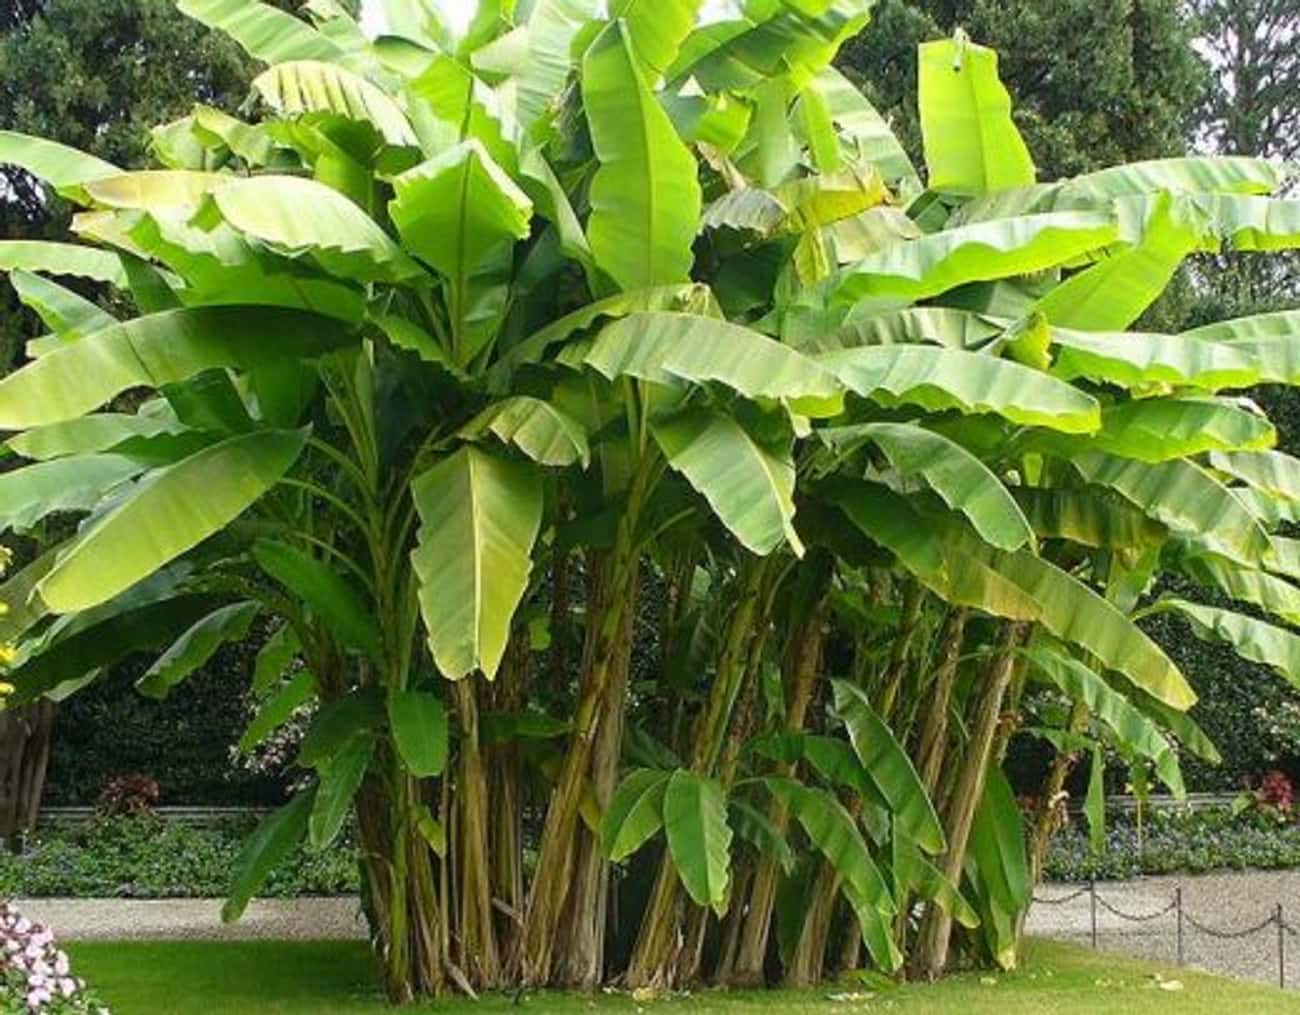 The Banana Tree is Not a Tree